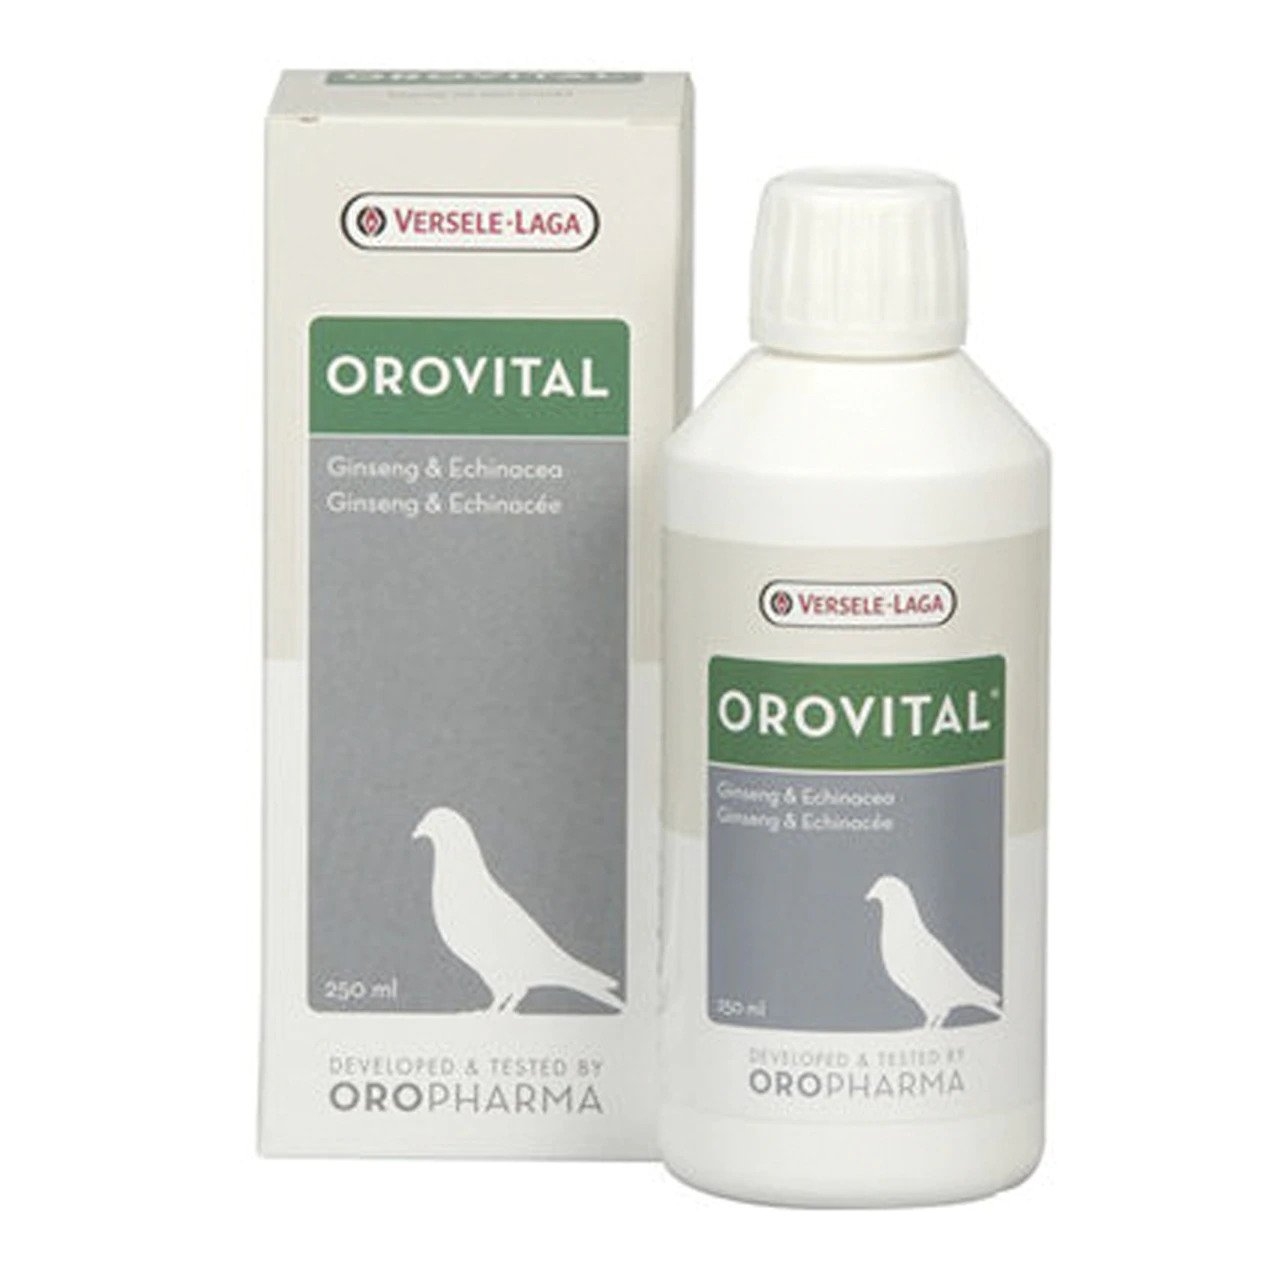 Orovital, 250 ml petmart